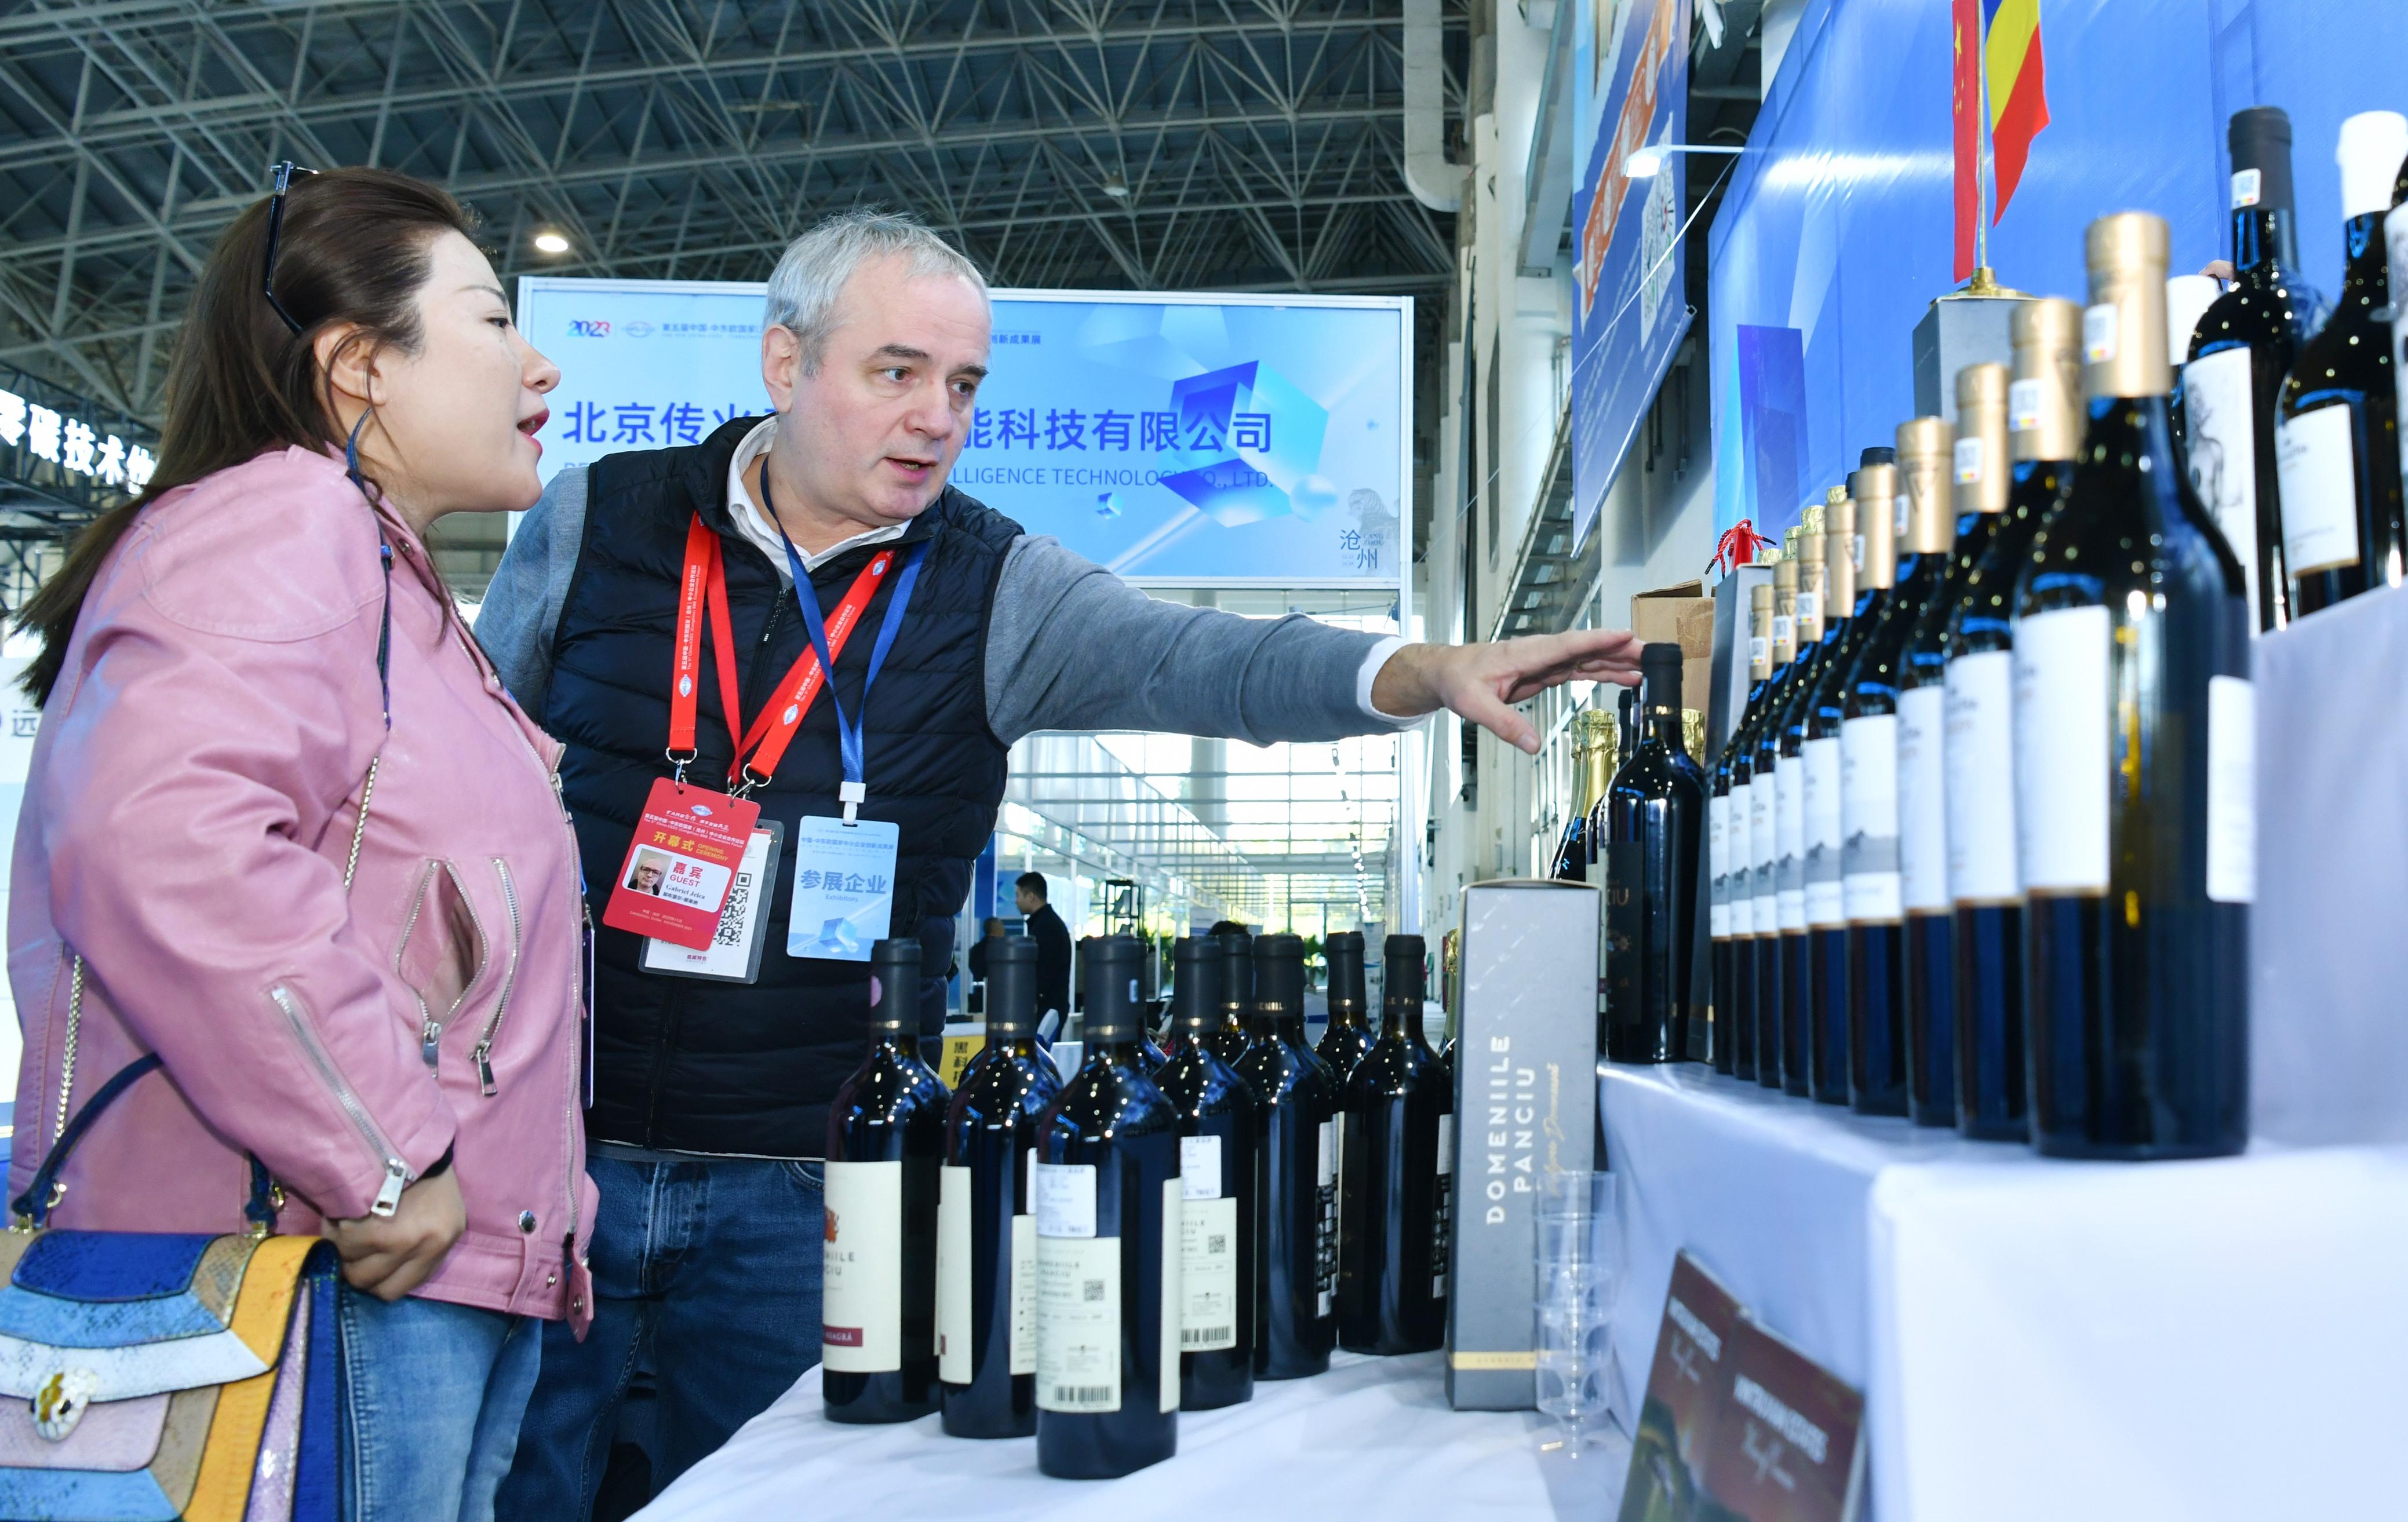 11月13日，來自羅馬尼亞的參展商（右）向與會客商介紹紅酒展品。 苑立偉攝